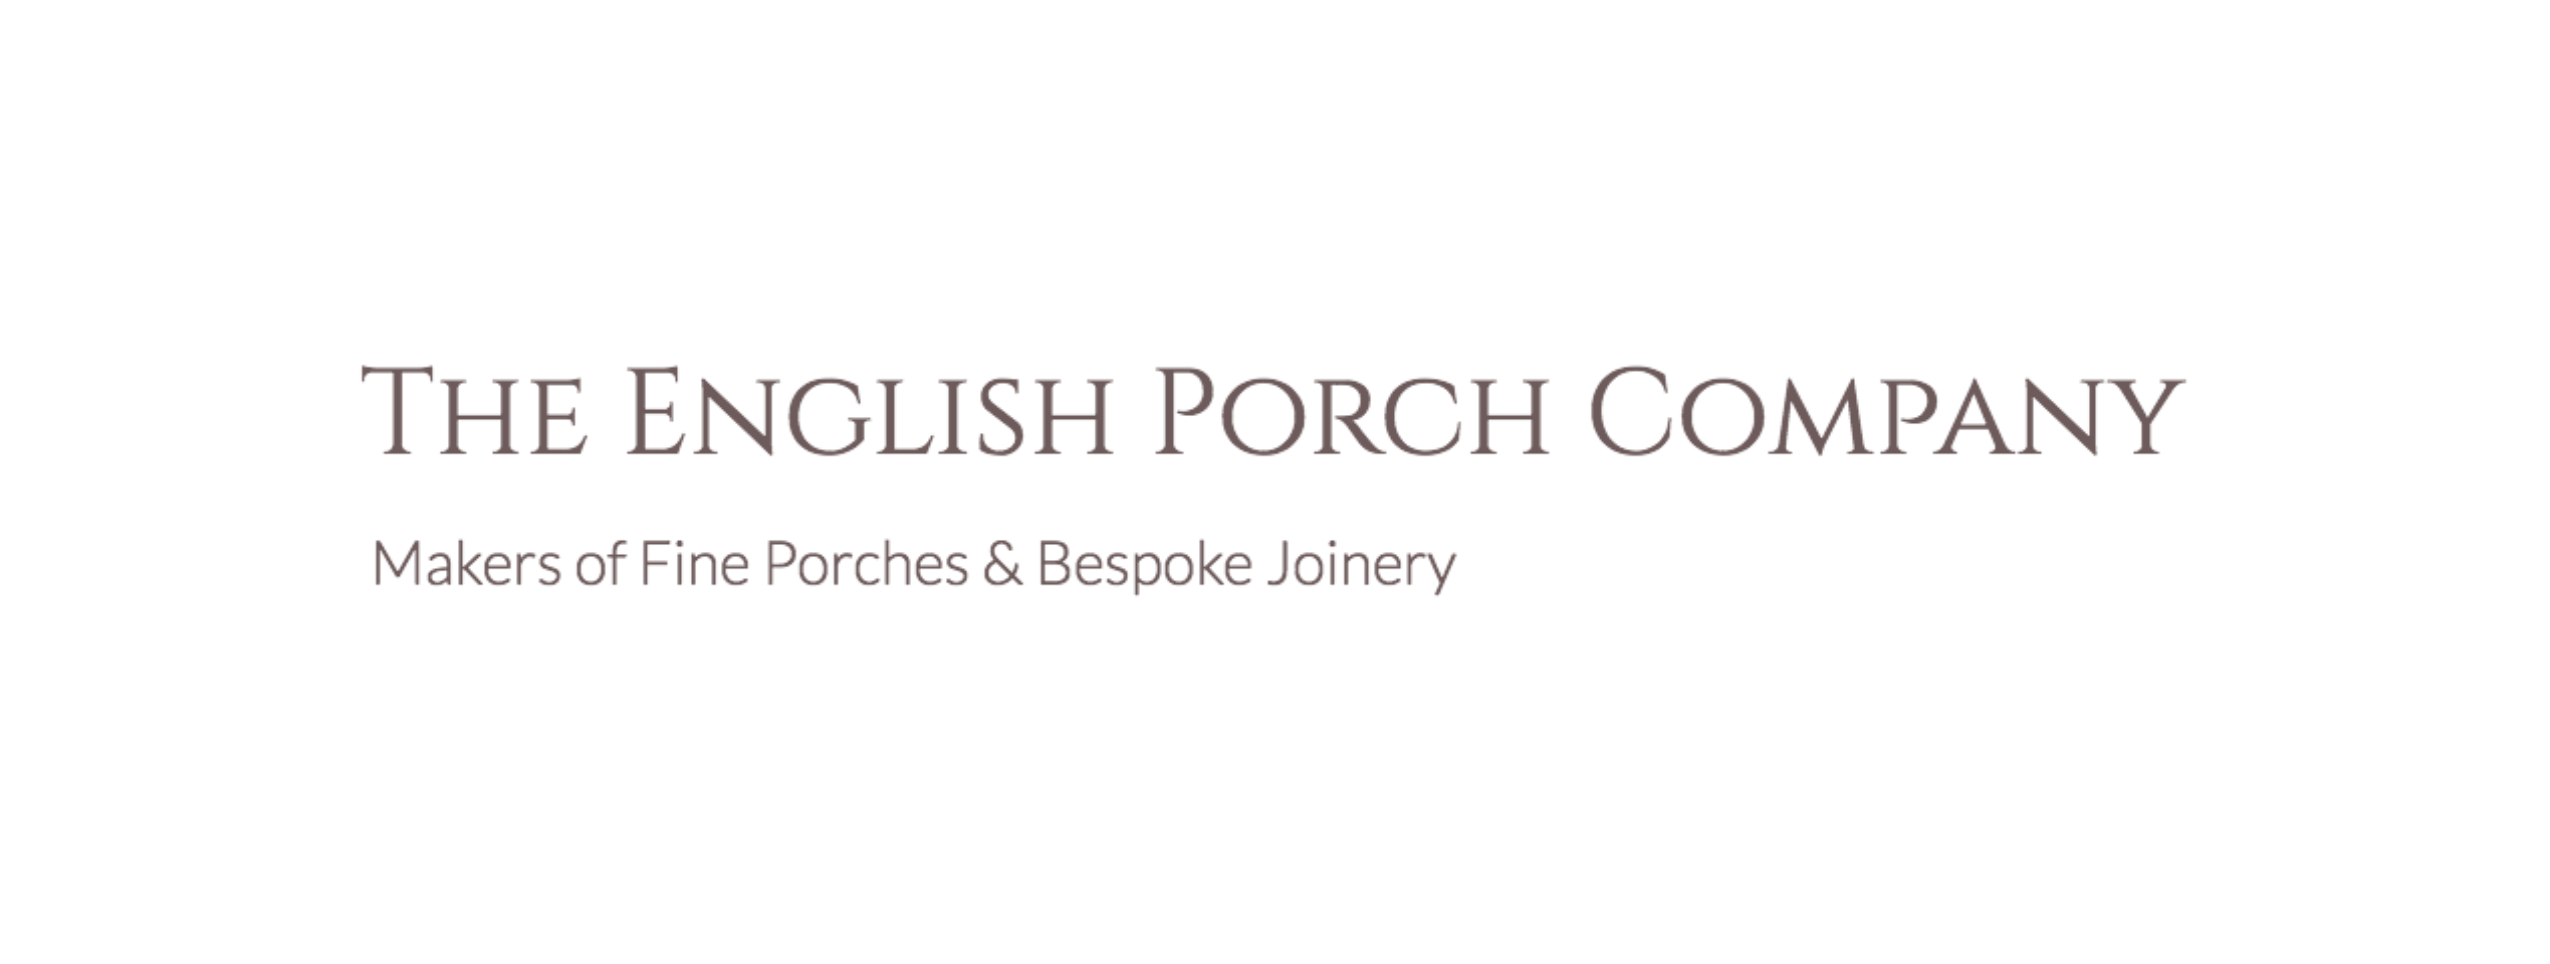 The English Porch Company